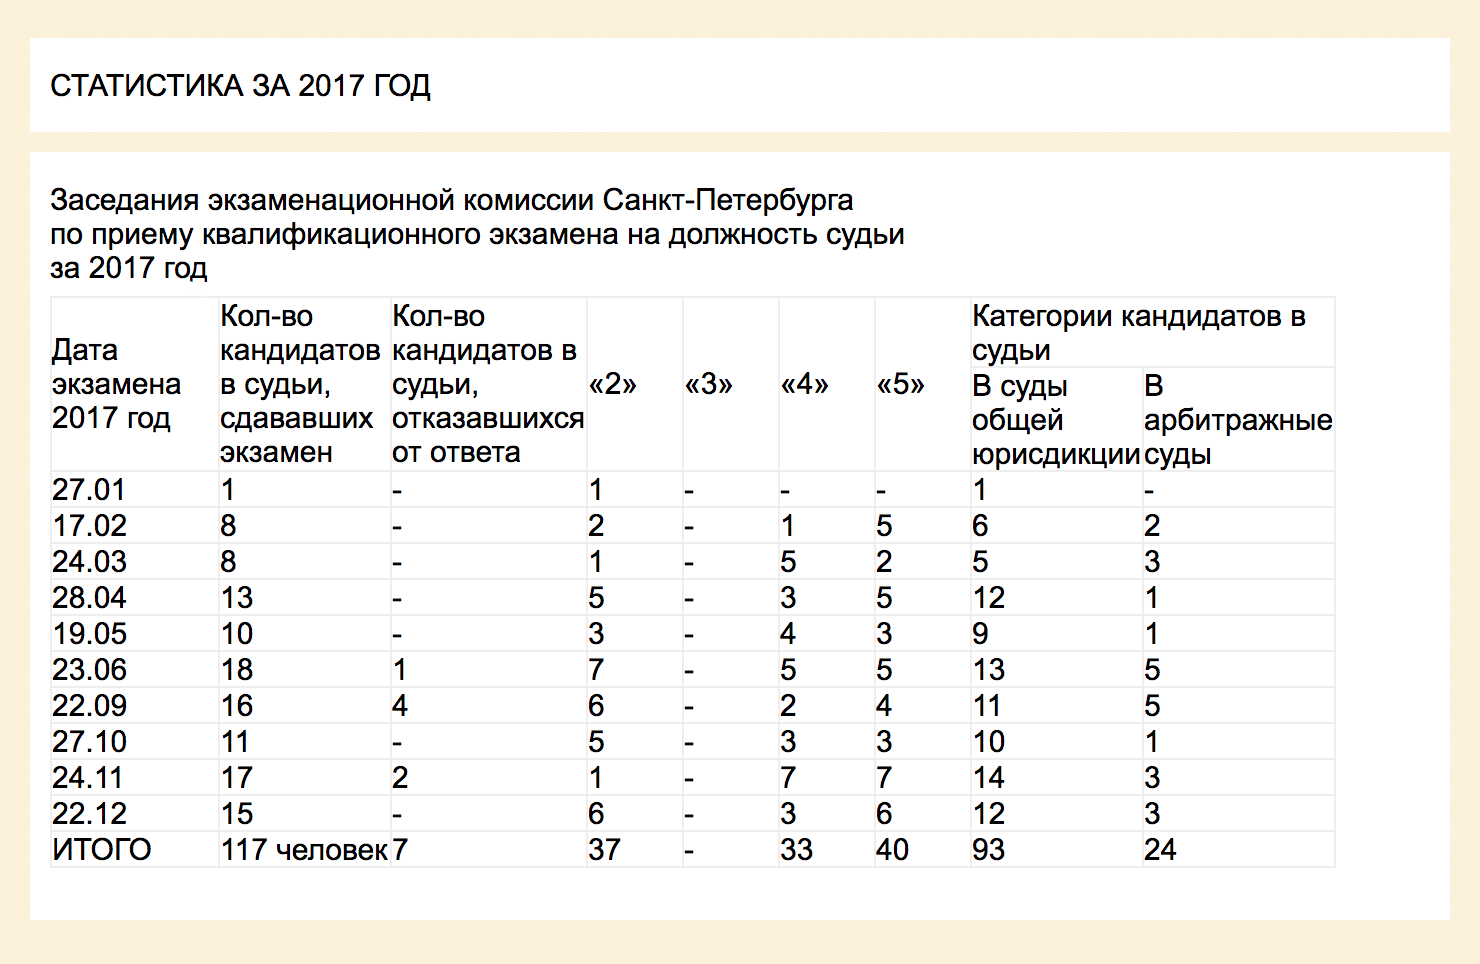 Статистика сдачи экзамена на должность судьи в Санкт-Петербурге за 2017 год